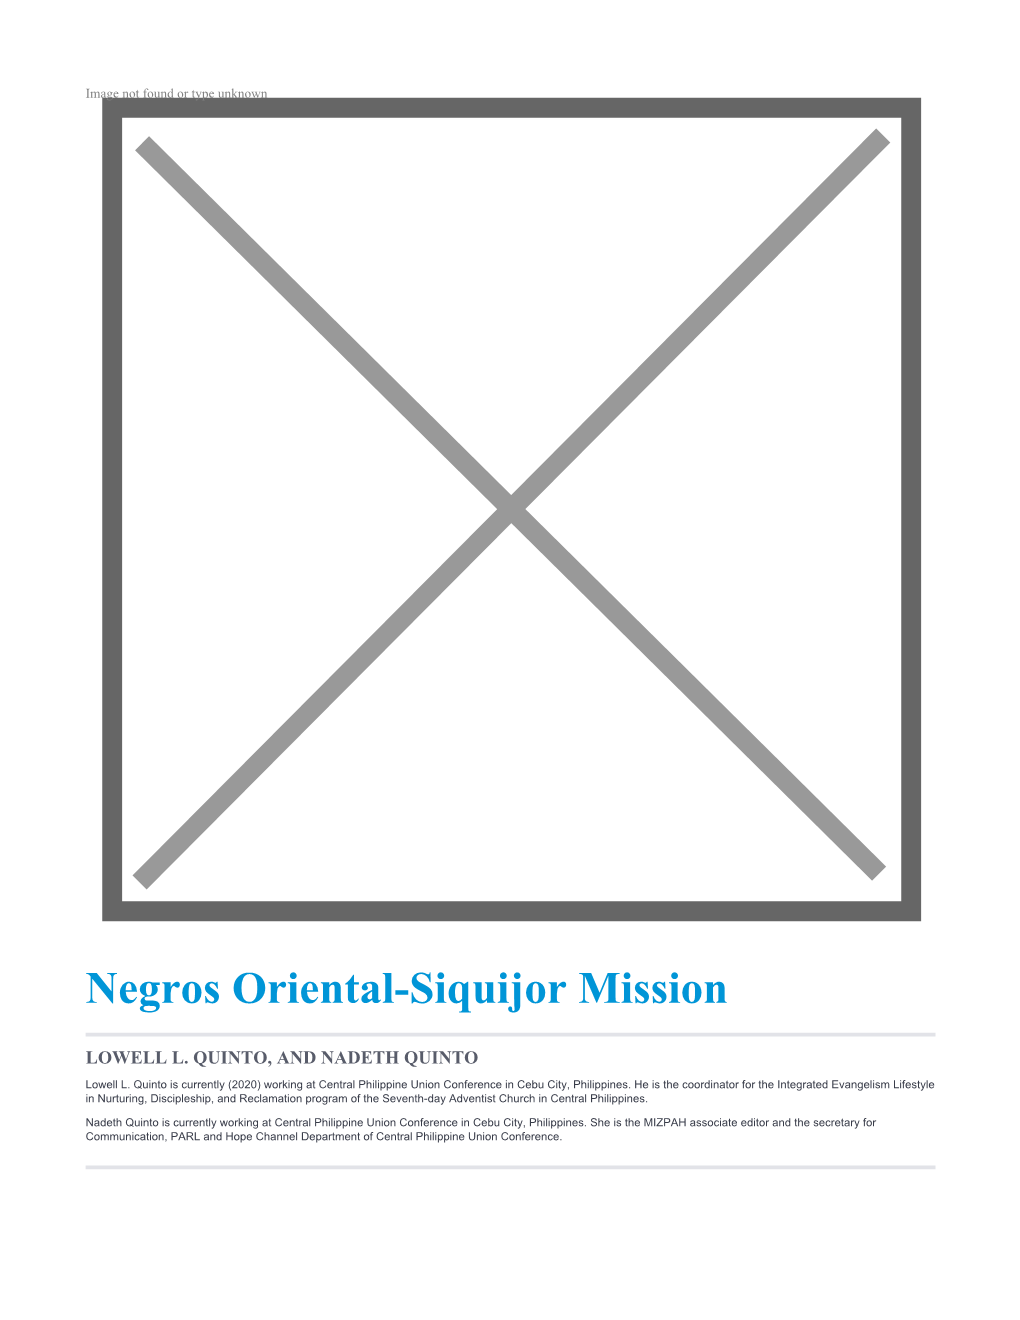 Negros Oriental-Siquijor Mission